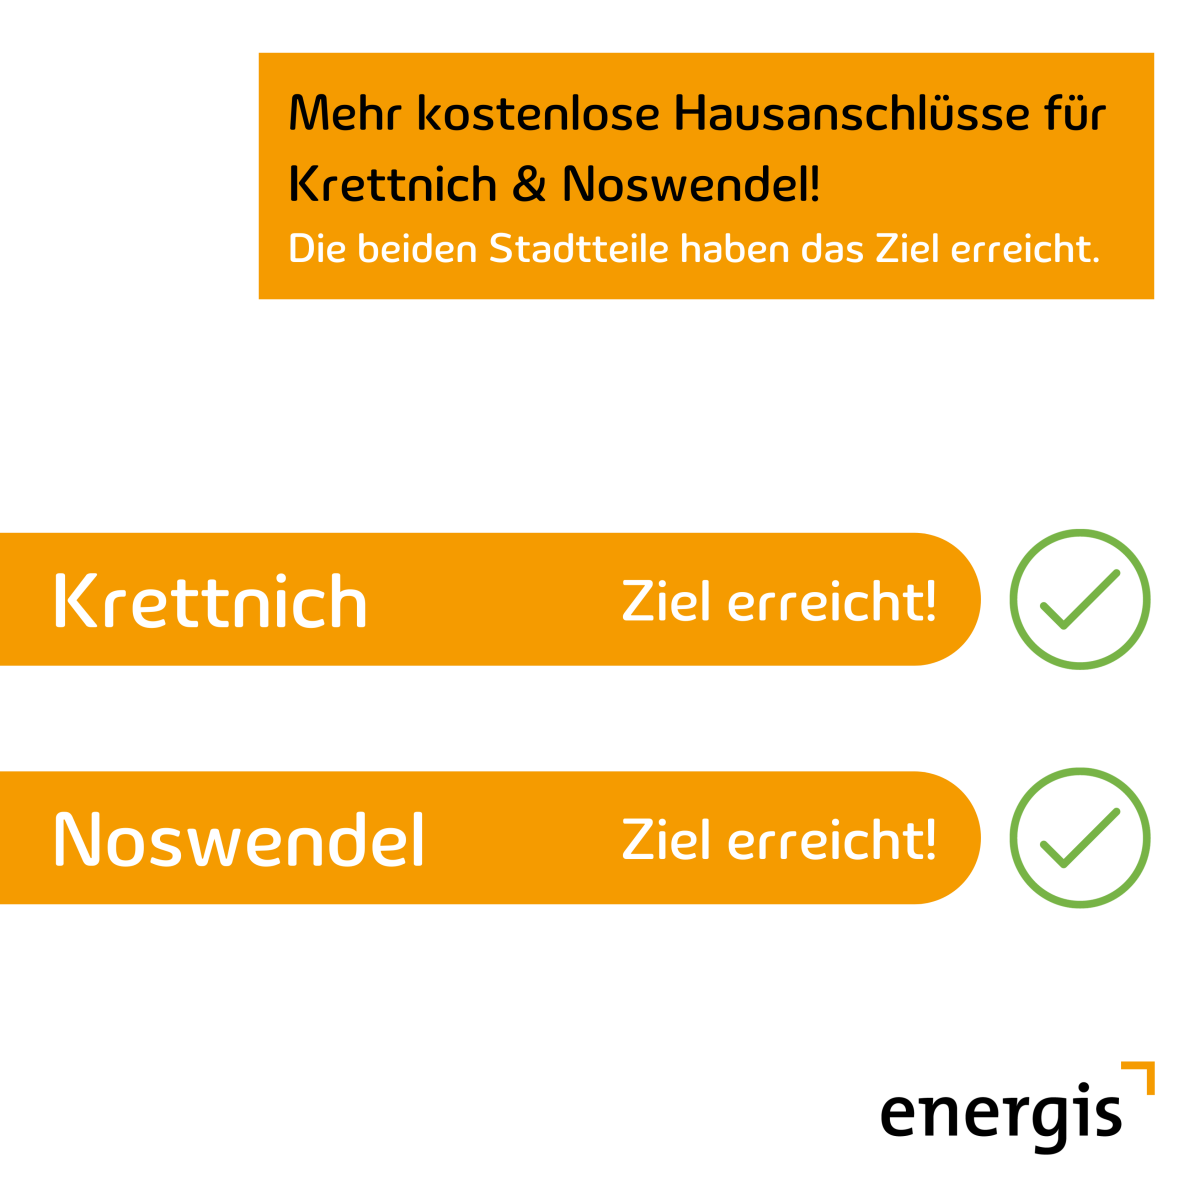 Krettnich & Noswendel